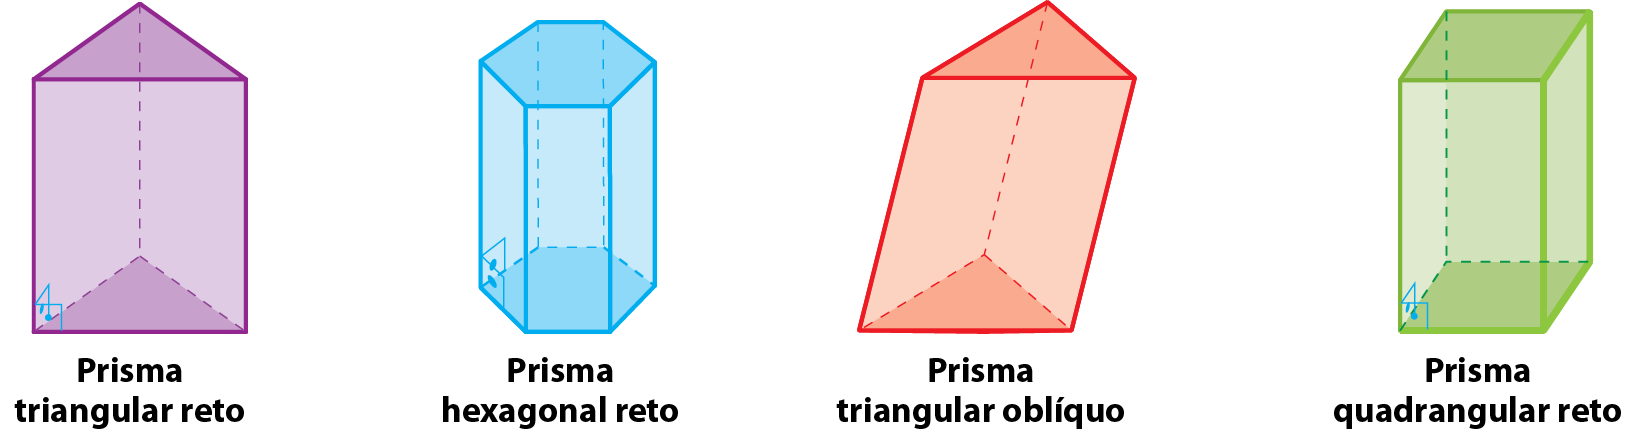 Ilustração. Prisma triangular reto. Poliedro formado por duas bases na forma de triângulo e três retângulos nas faces laterais. As arestas laterais formam ângulo reto com as bases.   Ilustração. Prisma hexagonal reto. Poliedro formado por duas bases na forma de hexágono regular e seis retângulos nas faces laterais. As arestas laterais formam ângulo reto com as bases.   Ilustração. Prisma triangular oblíquo. Poliedro formado por duas bases na forma de triângulo e três quadriláteros nas faces laterais. As arestas laterais não formam ângulo reto com as bases.   Ilustração. Prisma quadrangular reto. Poliedro formado por duas bases quadradas e quatro retângulos nas faces laterais. As arestas laterais formam ângulo reto com as bases.